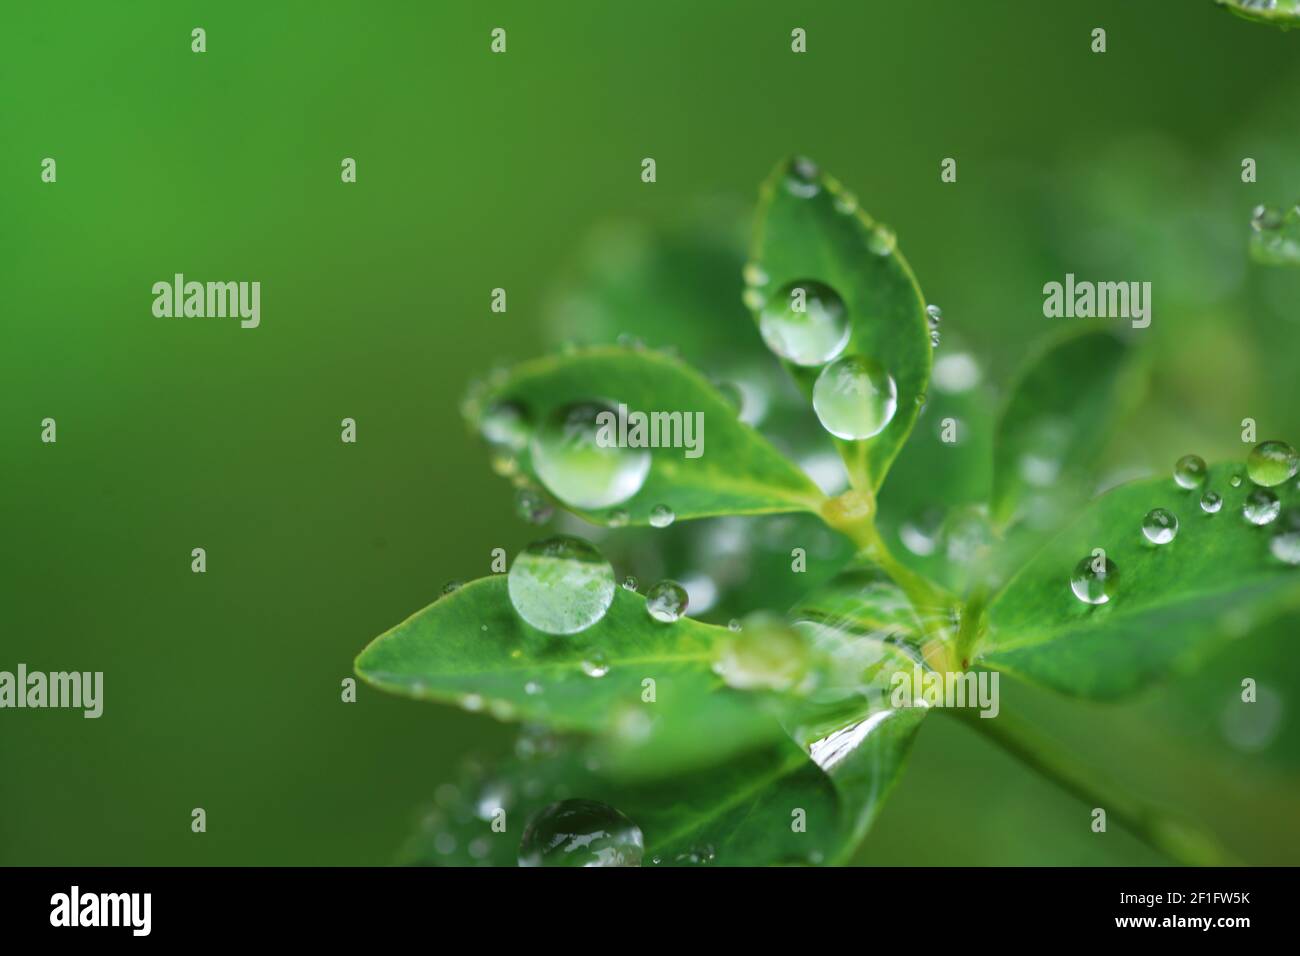 Tag Der Erde. Ökologisch . Grüne Blätter mit Wassertropfen auf verschwommenem hellgrünen Hintergrund.schöne Natur Hintergrund.Grüne Pflanzen auf grünem Hintergrund Stockfoto